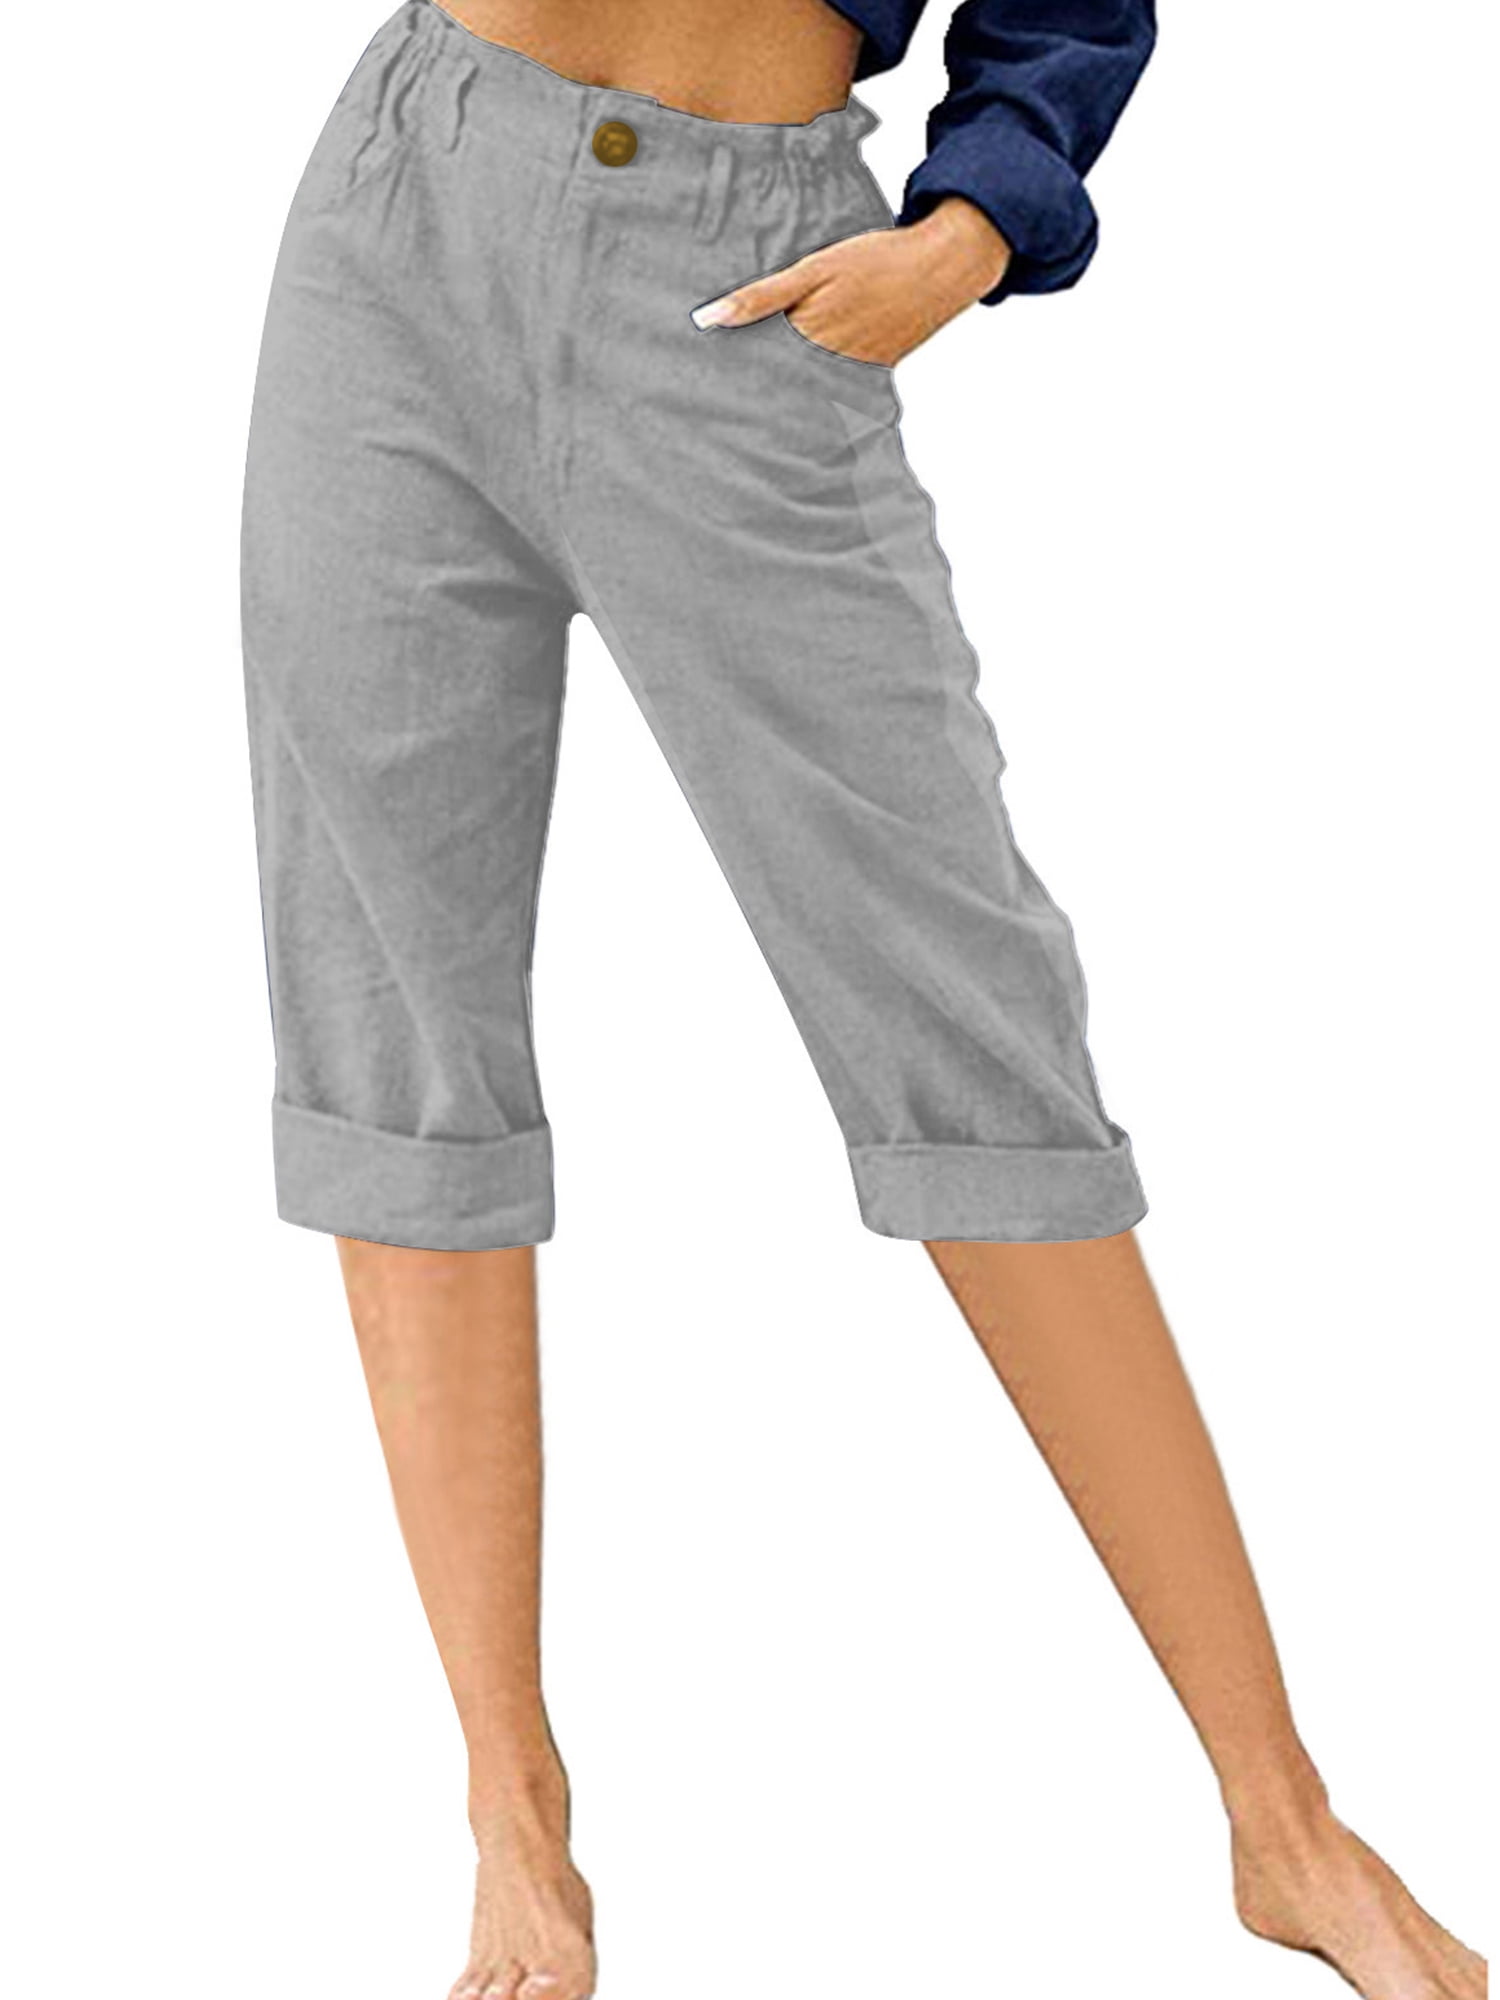 Frontwalk Ladies Cropped Pant High Waist Capri Pants Button Capris Women  Baggy Trousers Solid Color Bottoms Apricot XL 